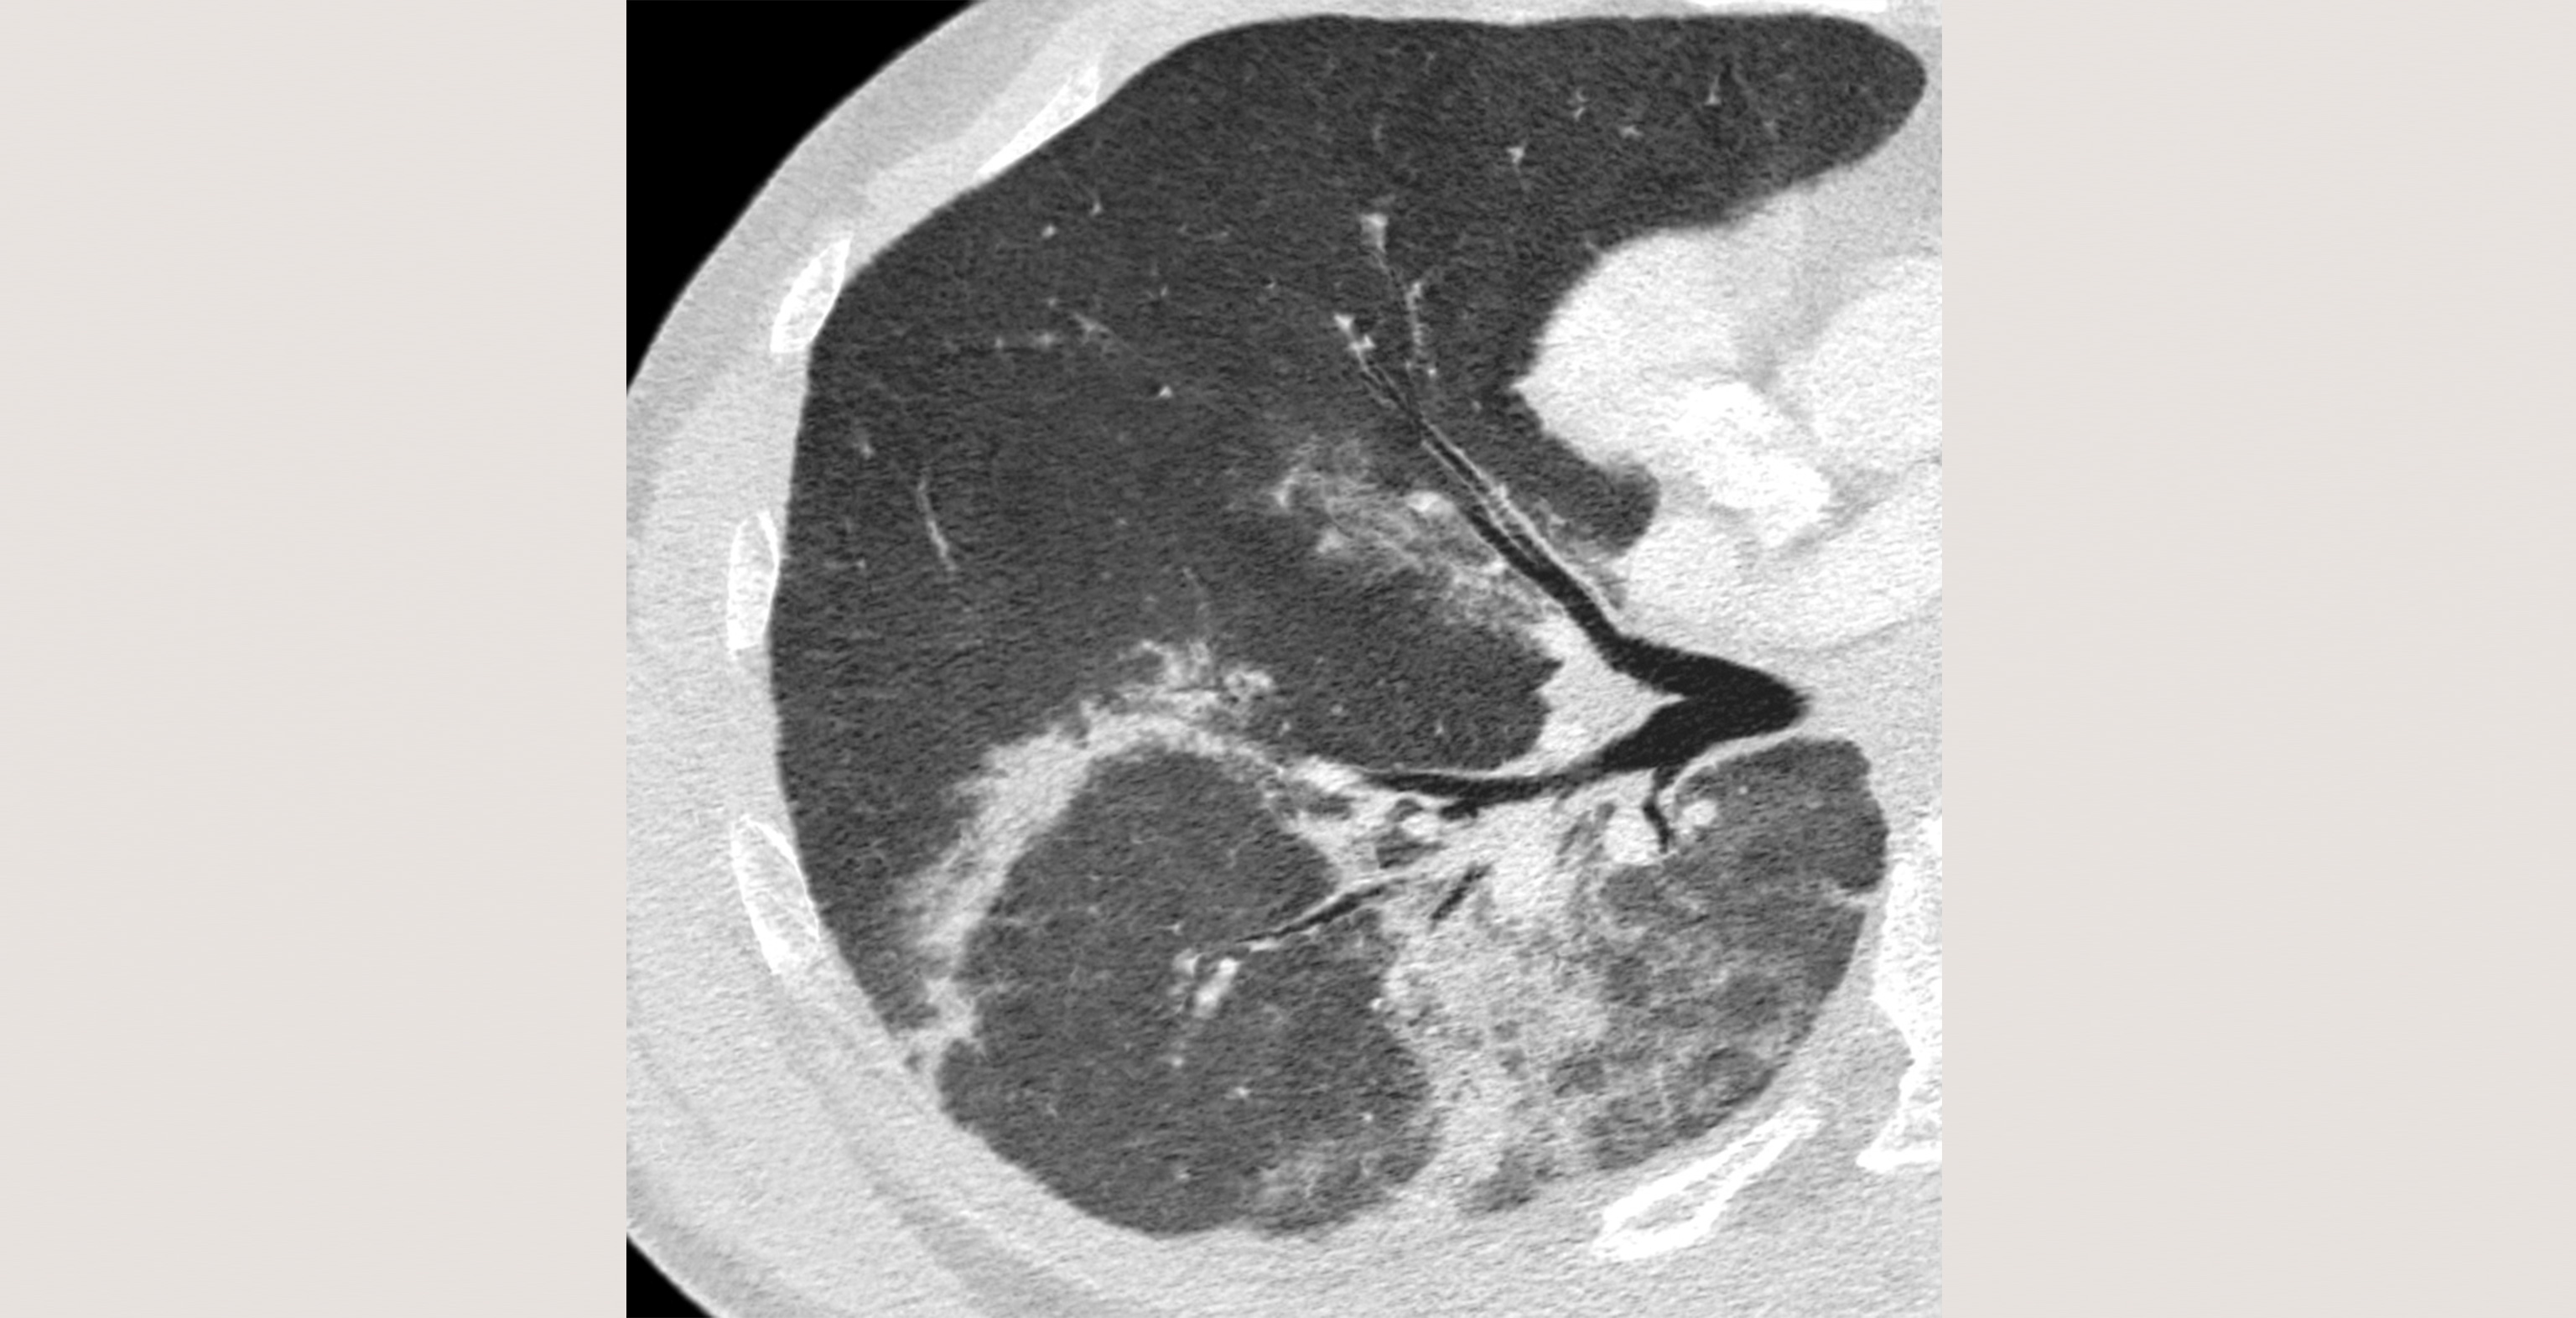 d4-radiology-viral-pneumonia